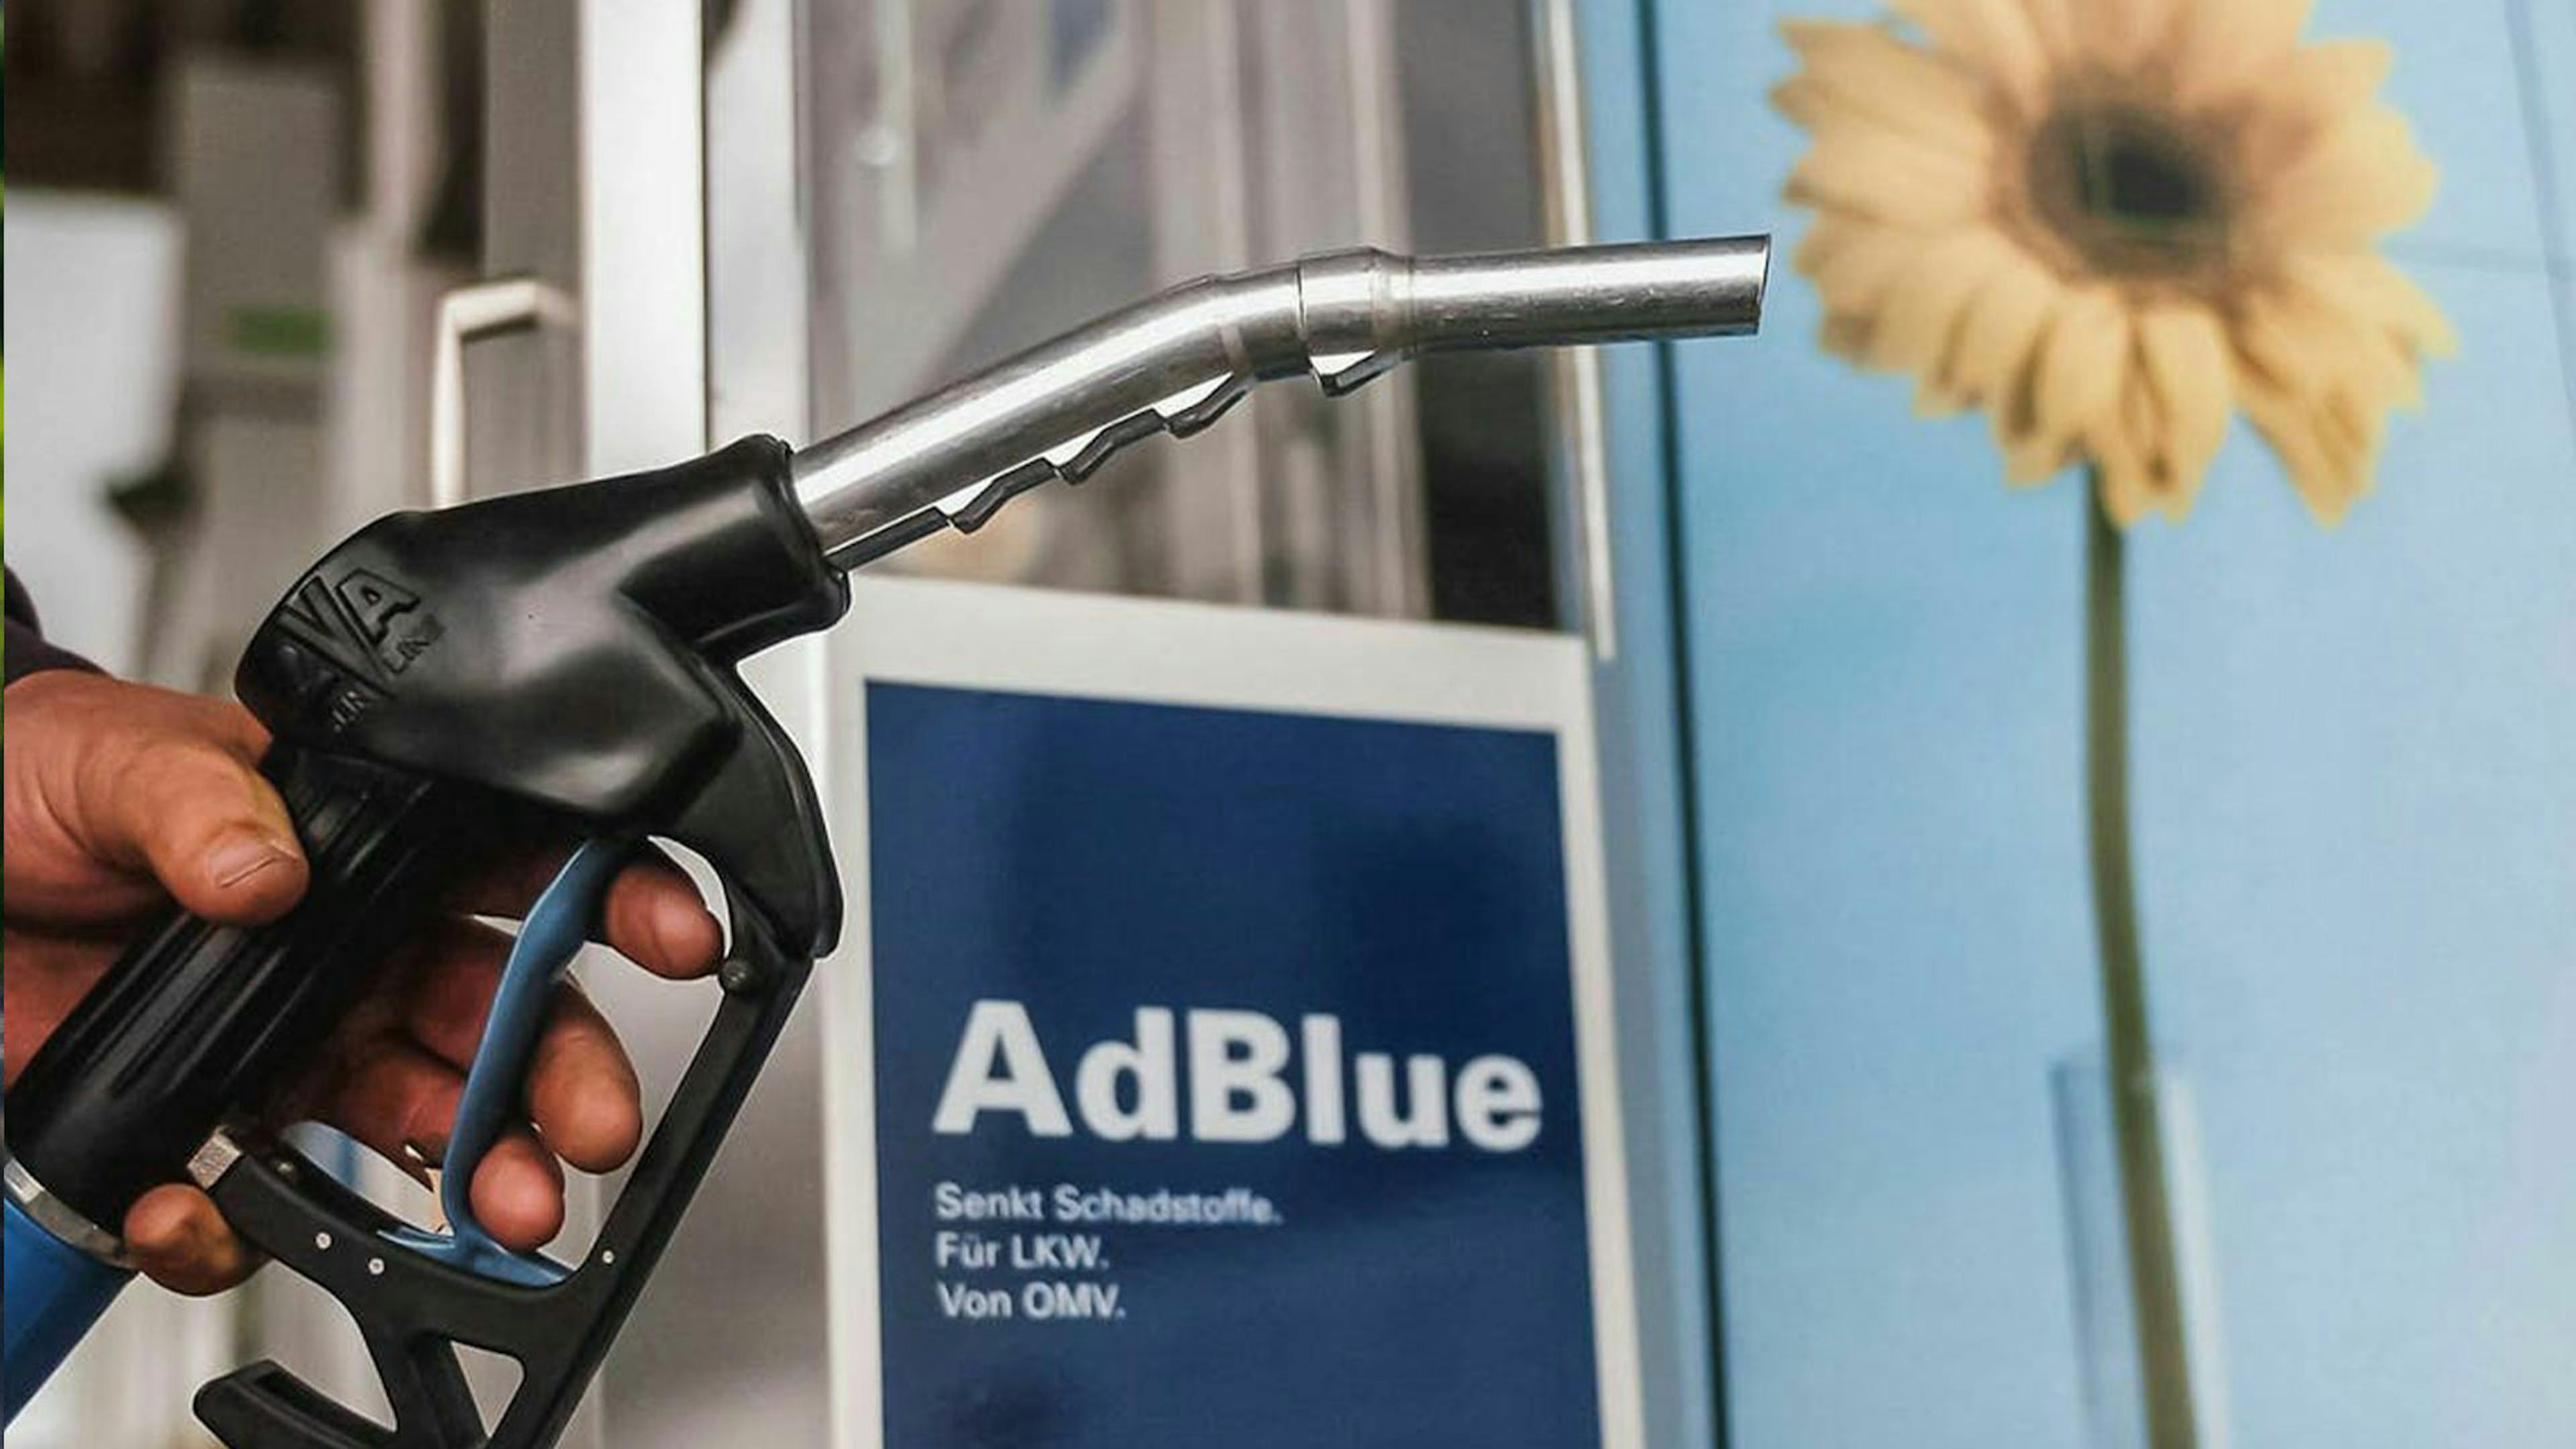 Eine Hand hält den Zapfhahn einer Tanksäule mit AdBlue-Dieseltreibstoff.